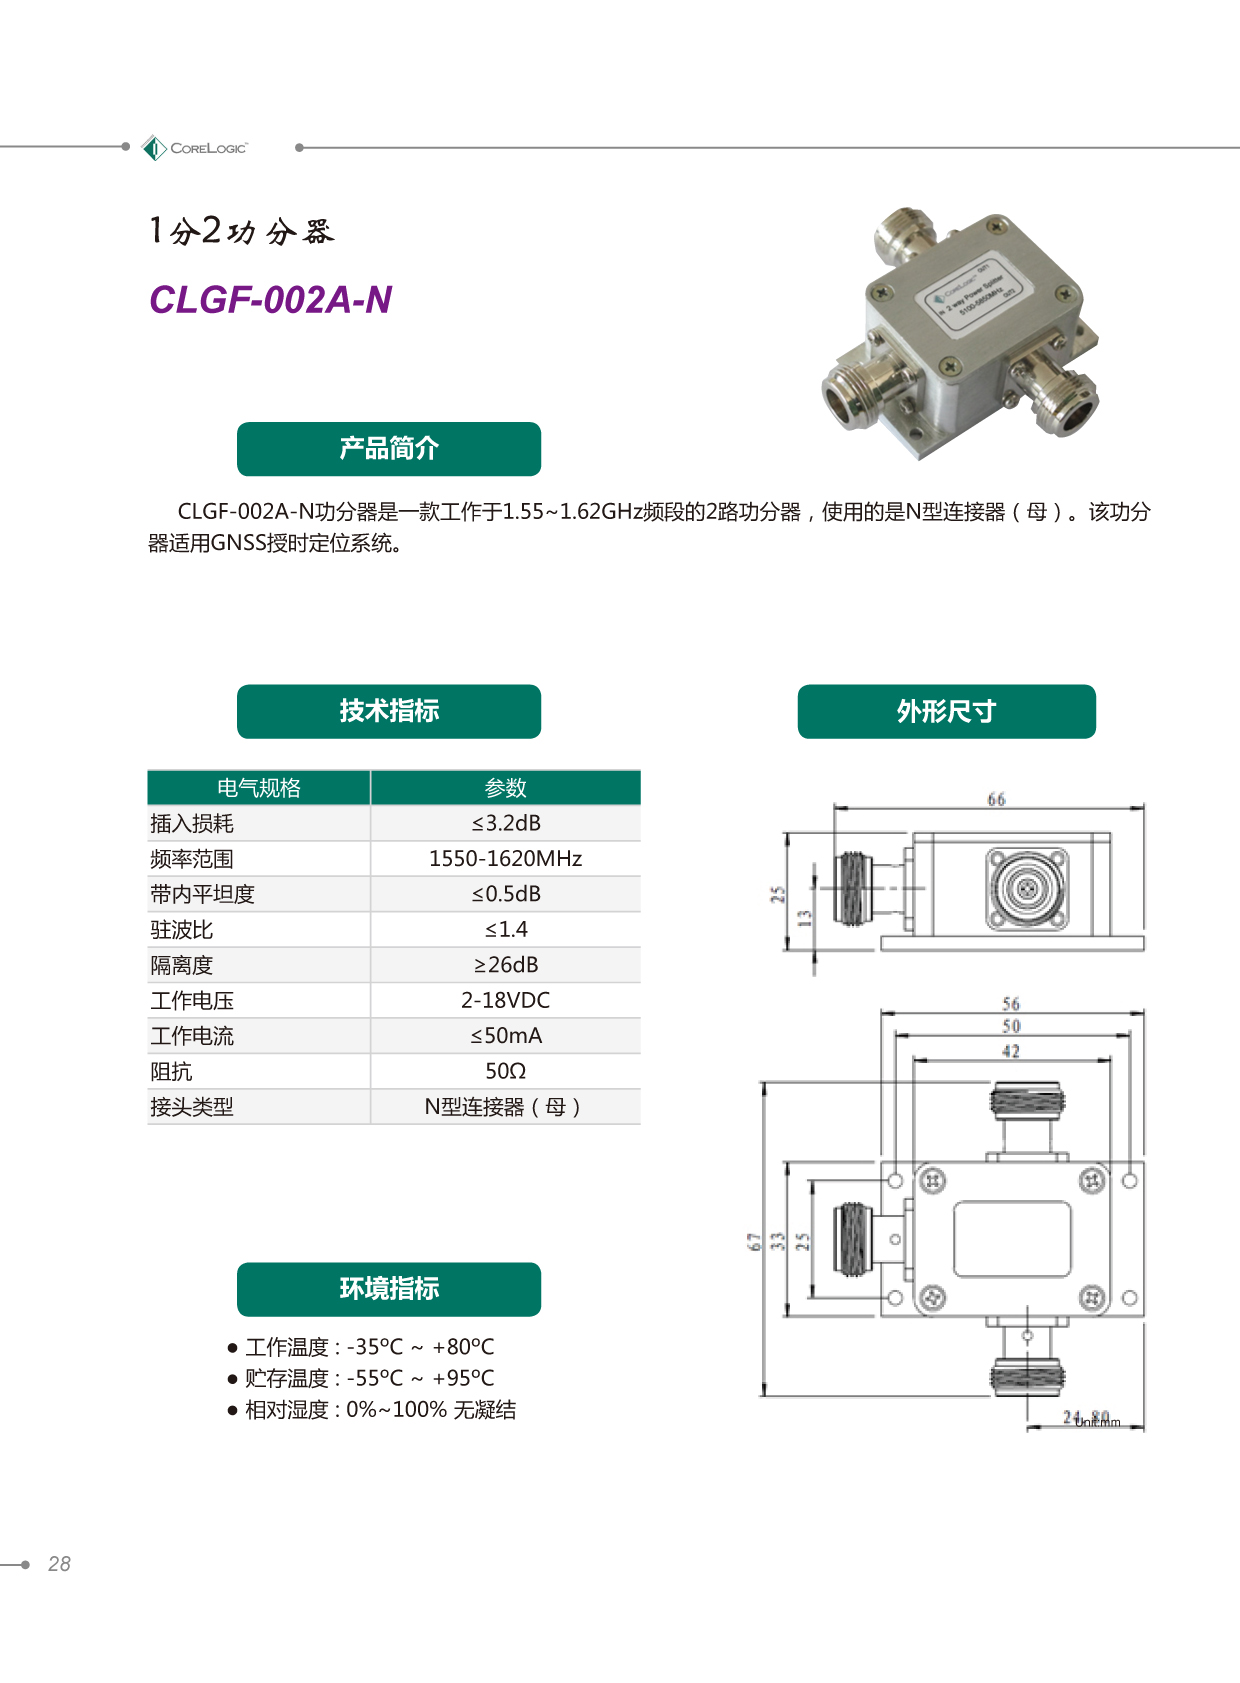 clgf-002a-n产品详情